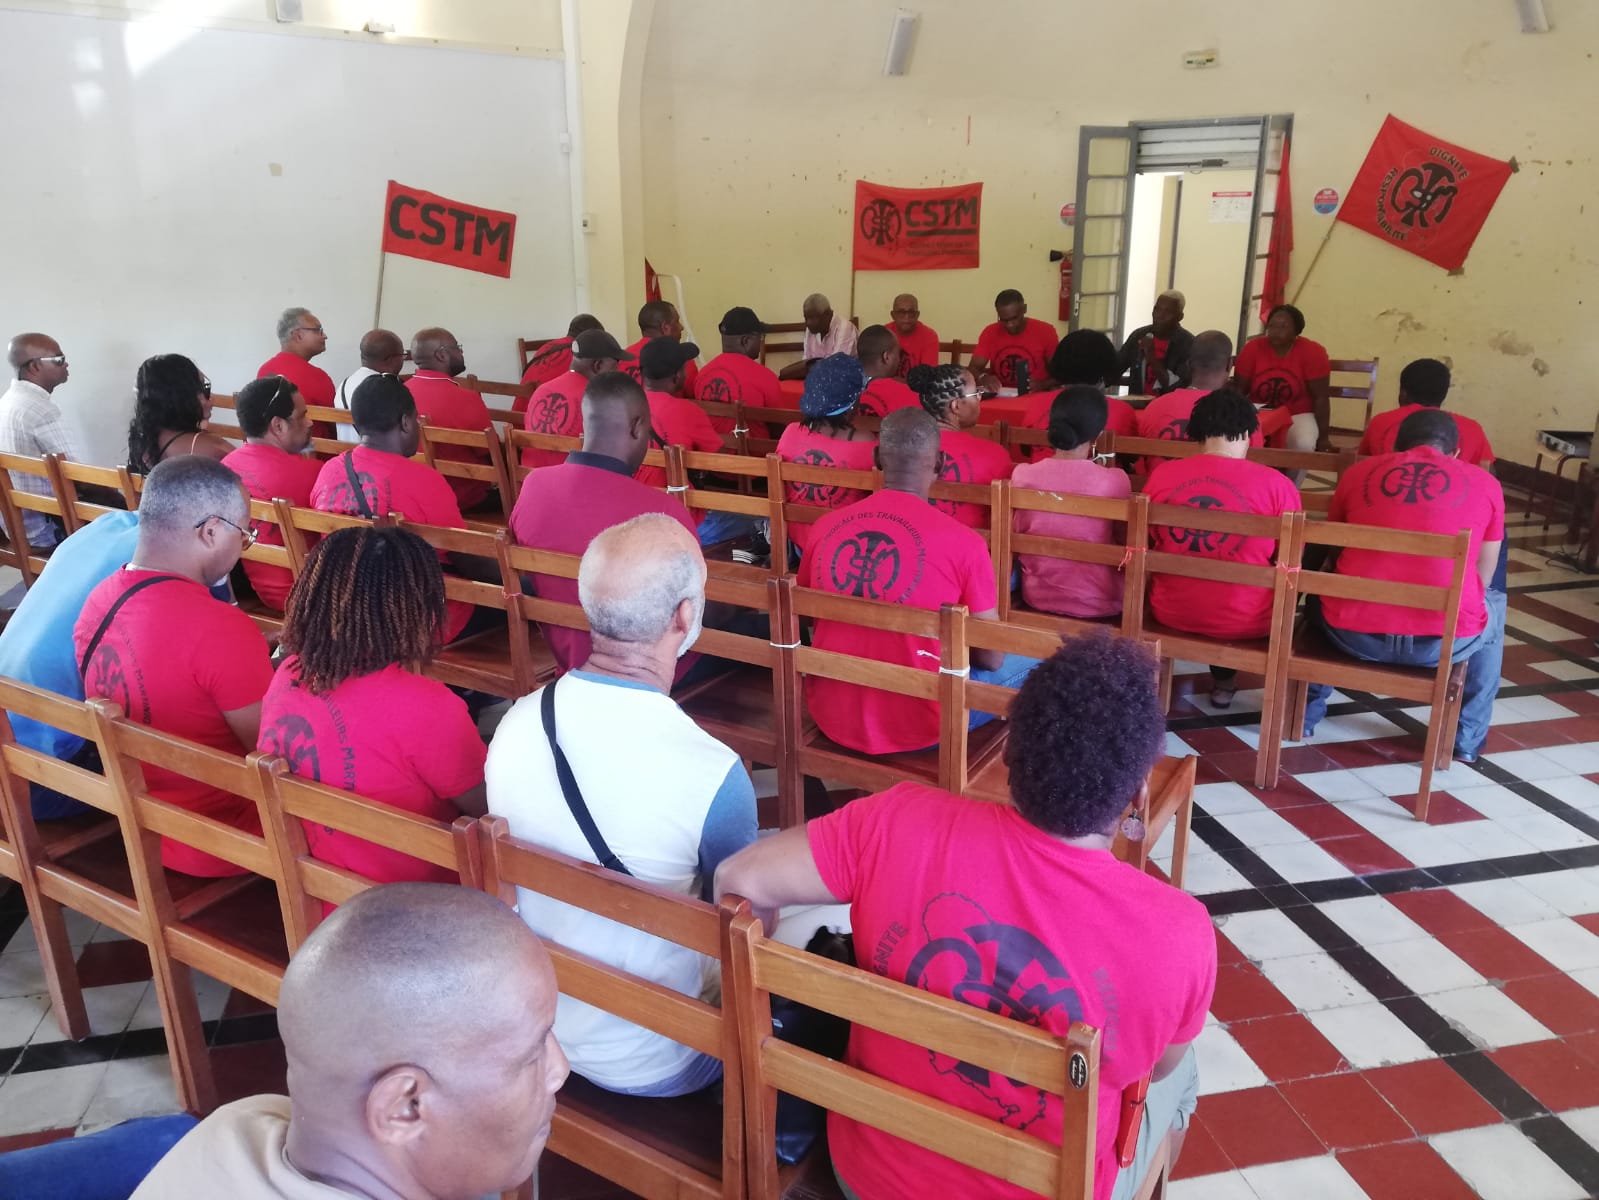     Réforme des retraites : à quoi va ressembler la mobilisation en Martinique ?

